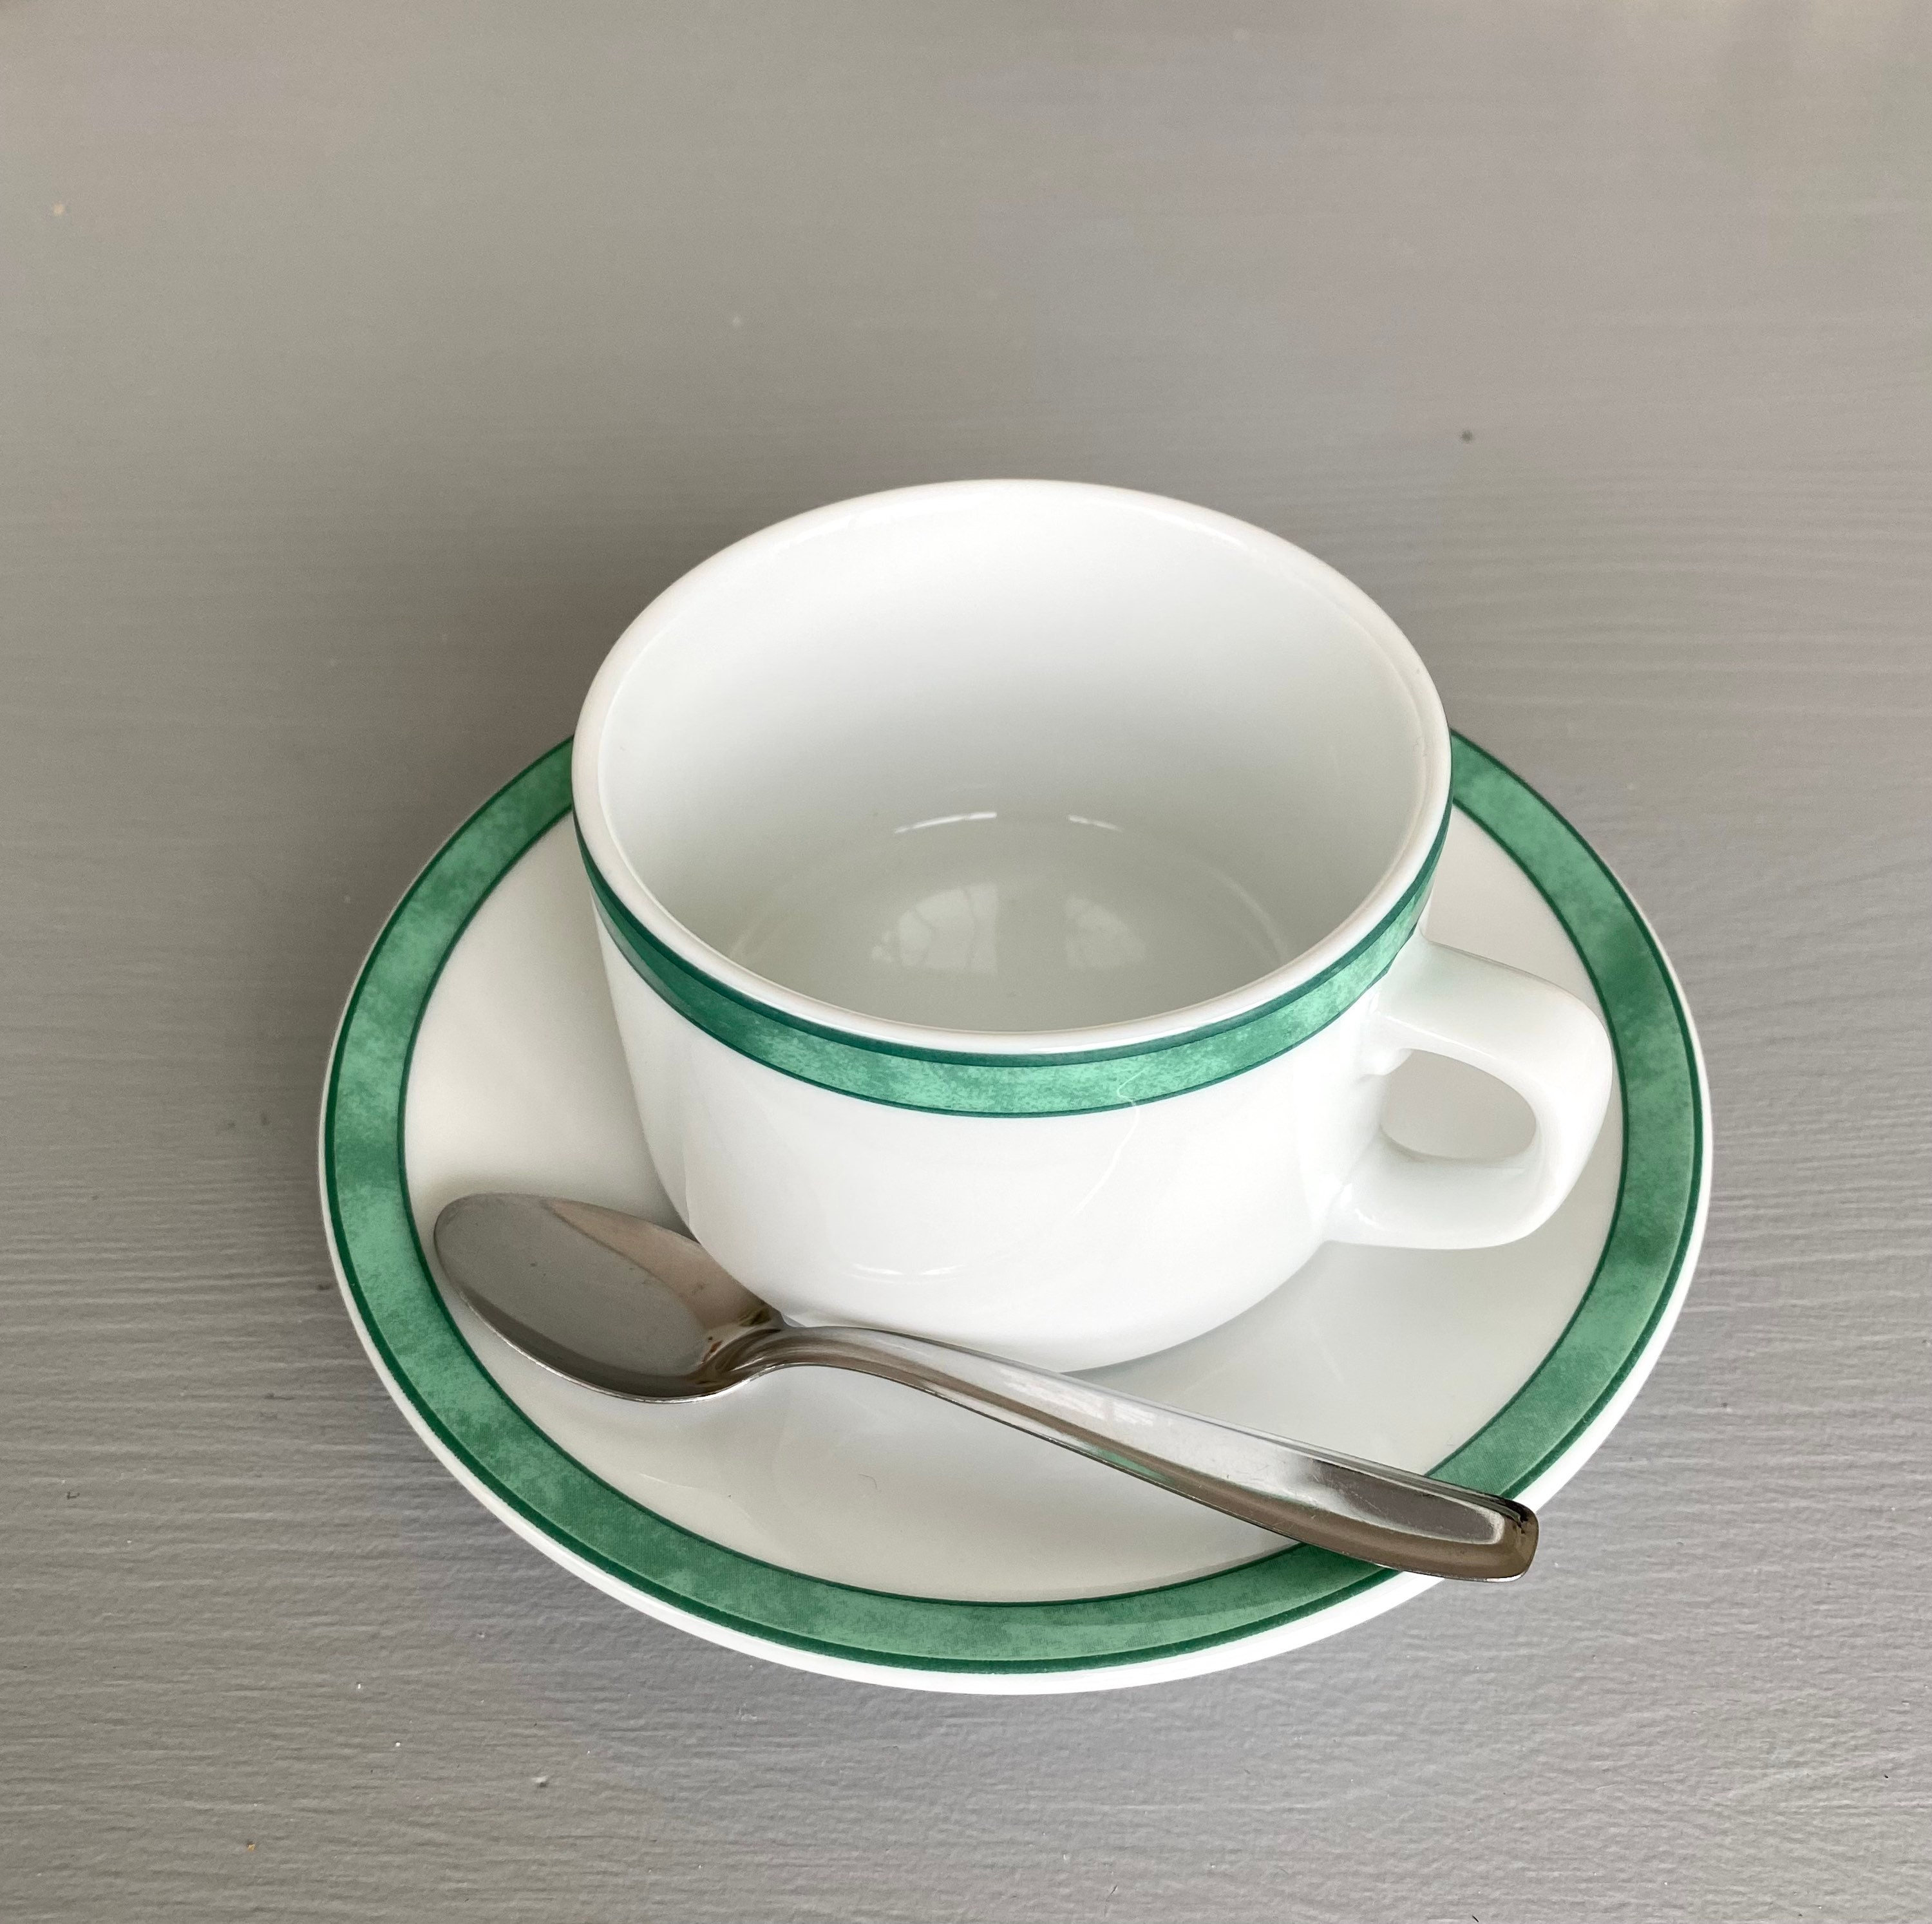 Tasse en Porcelaine Bernardaud Limoges// Tasse Vintage// Blanche avec Un Liseré Vert //Tasses à Café